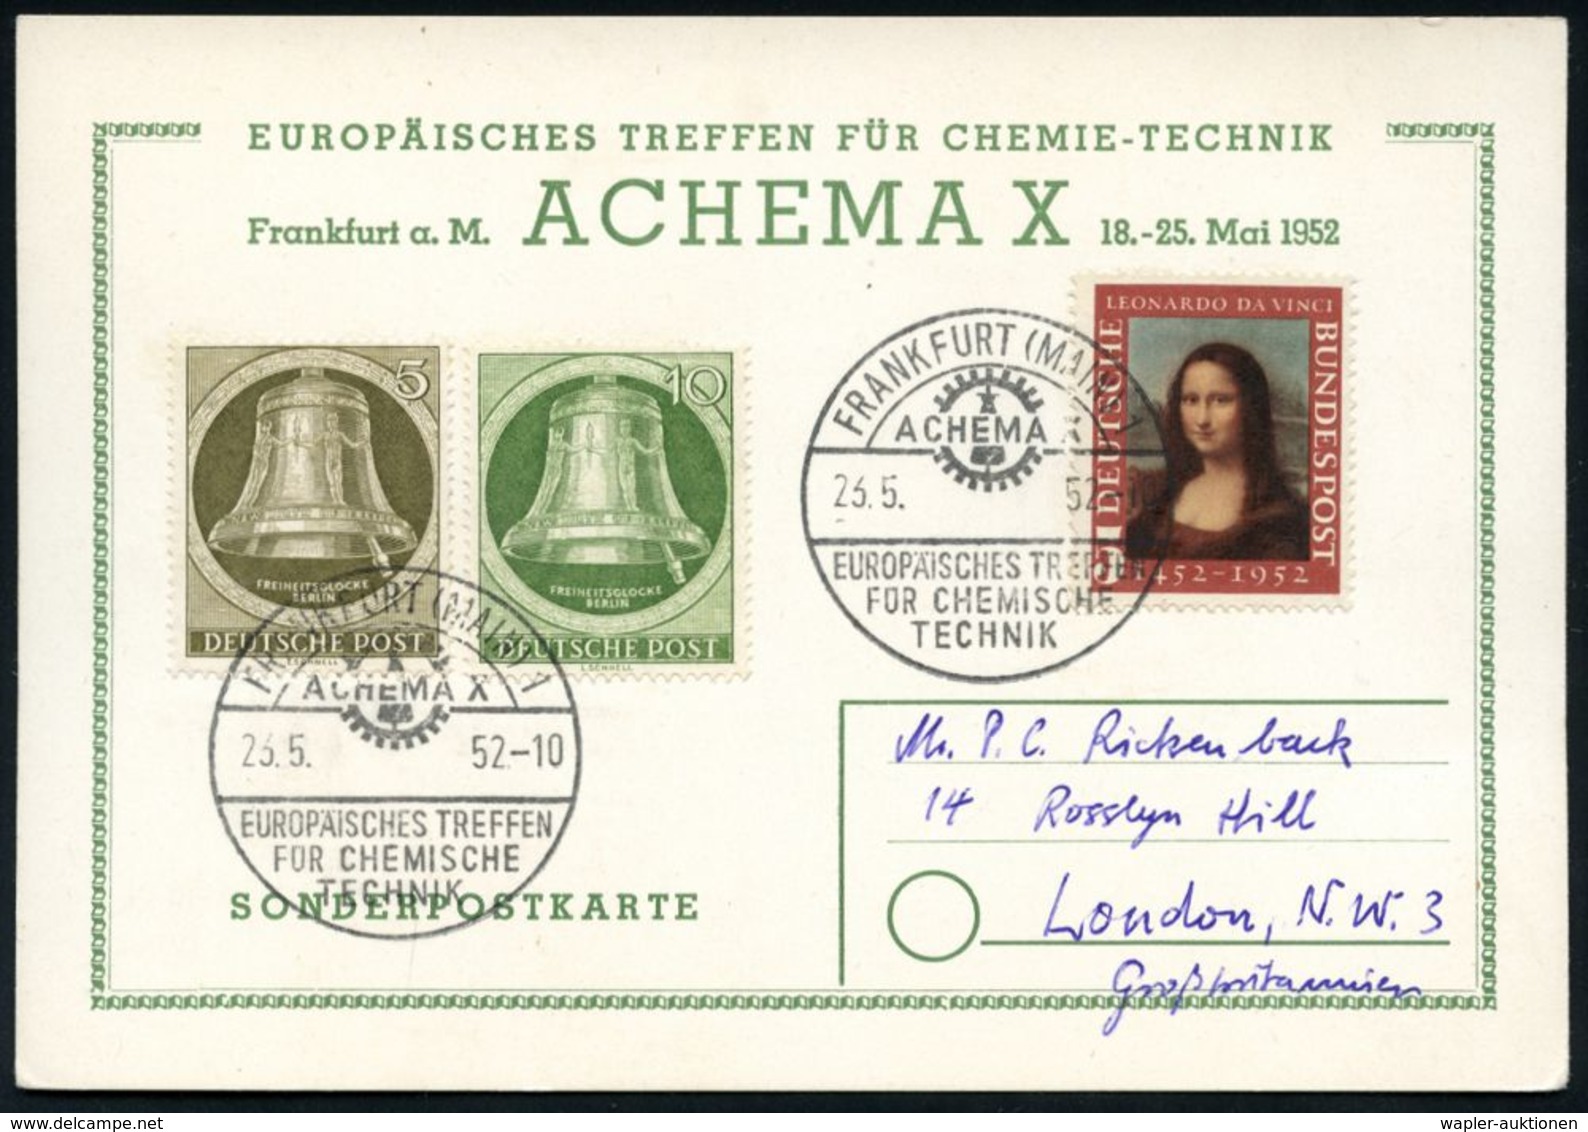 CHEMIE-INSTITUTIONEN, -VERBÄNDE & KONGRESSE : FRANKFURT (MAIN)1/ ACHEMA X/ EUROP.TREFFEN/ FÜR CHEMIE/ TECHNIK 1952 (21.5 - Chimie